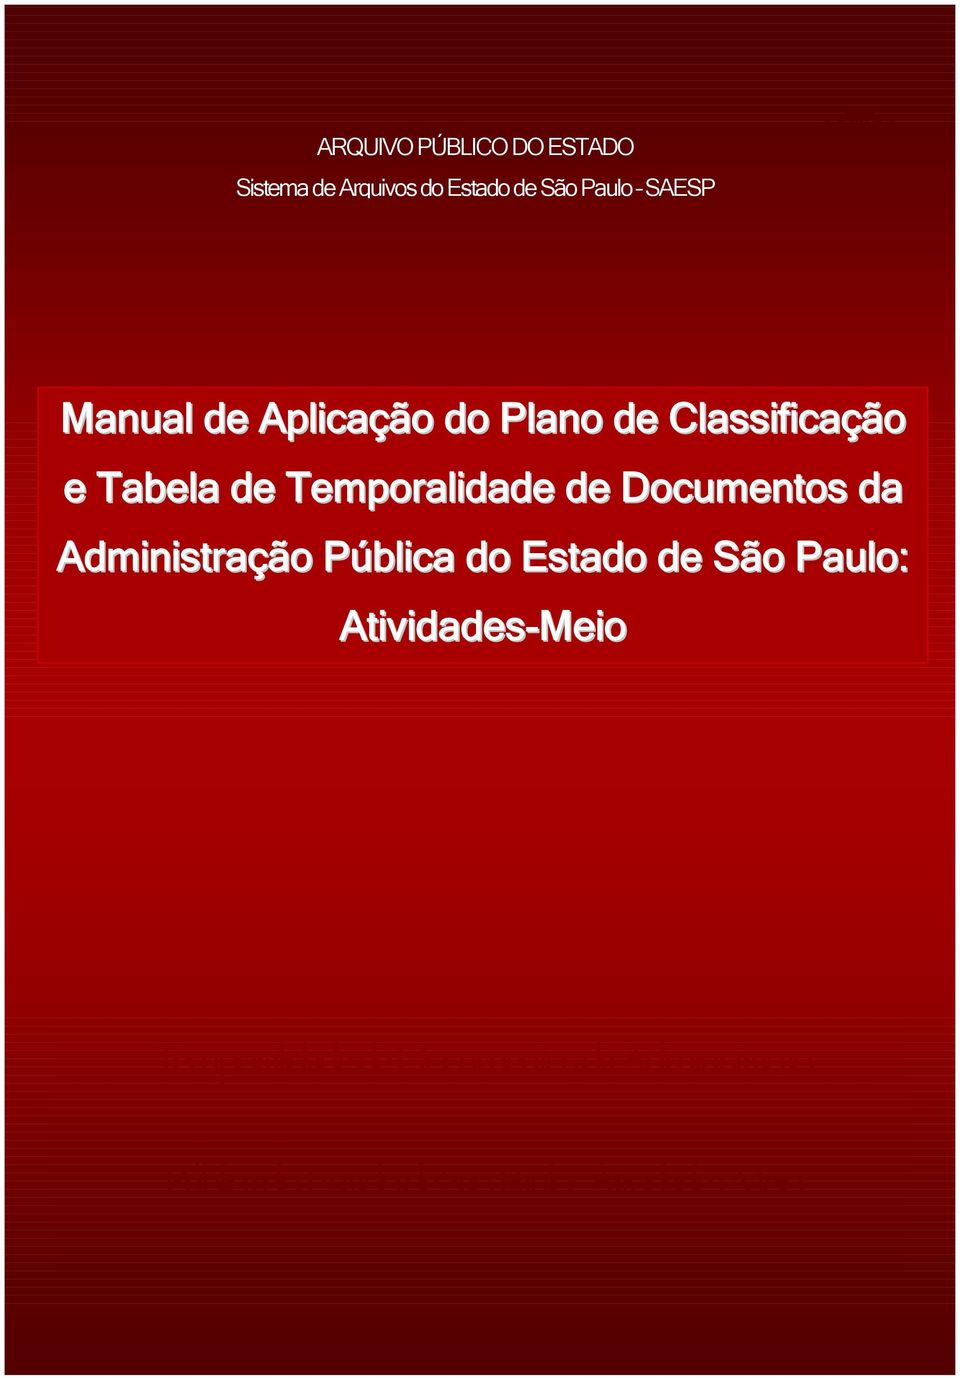 Documentos da Administração Pública do Estado de São Paulo: Atividades-Meio Manual de aplicação do Plano de